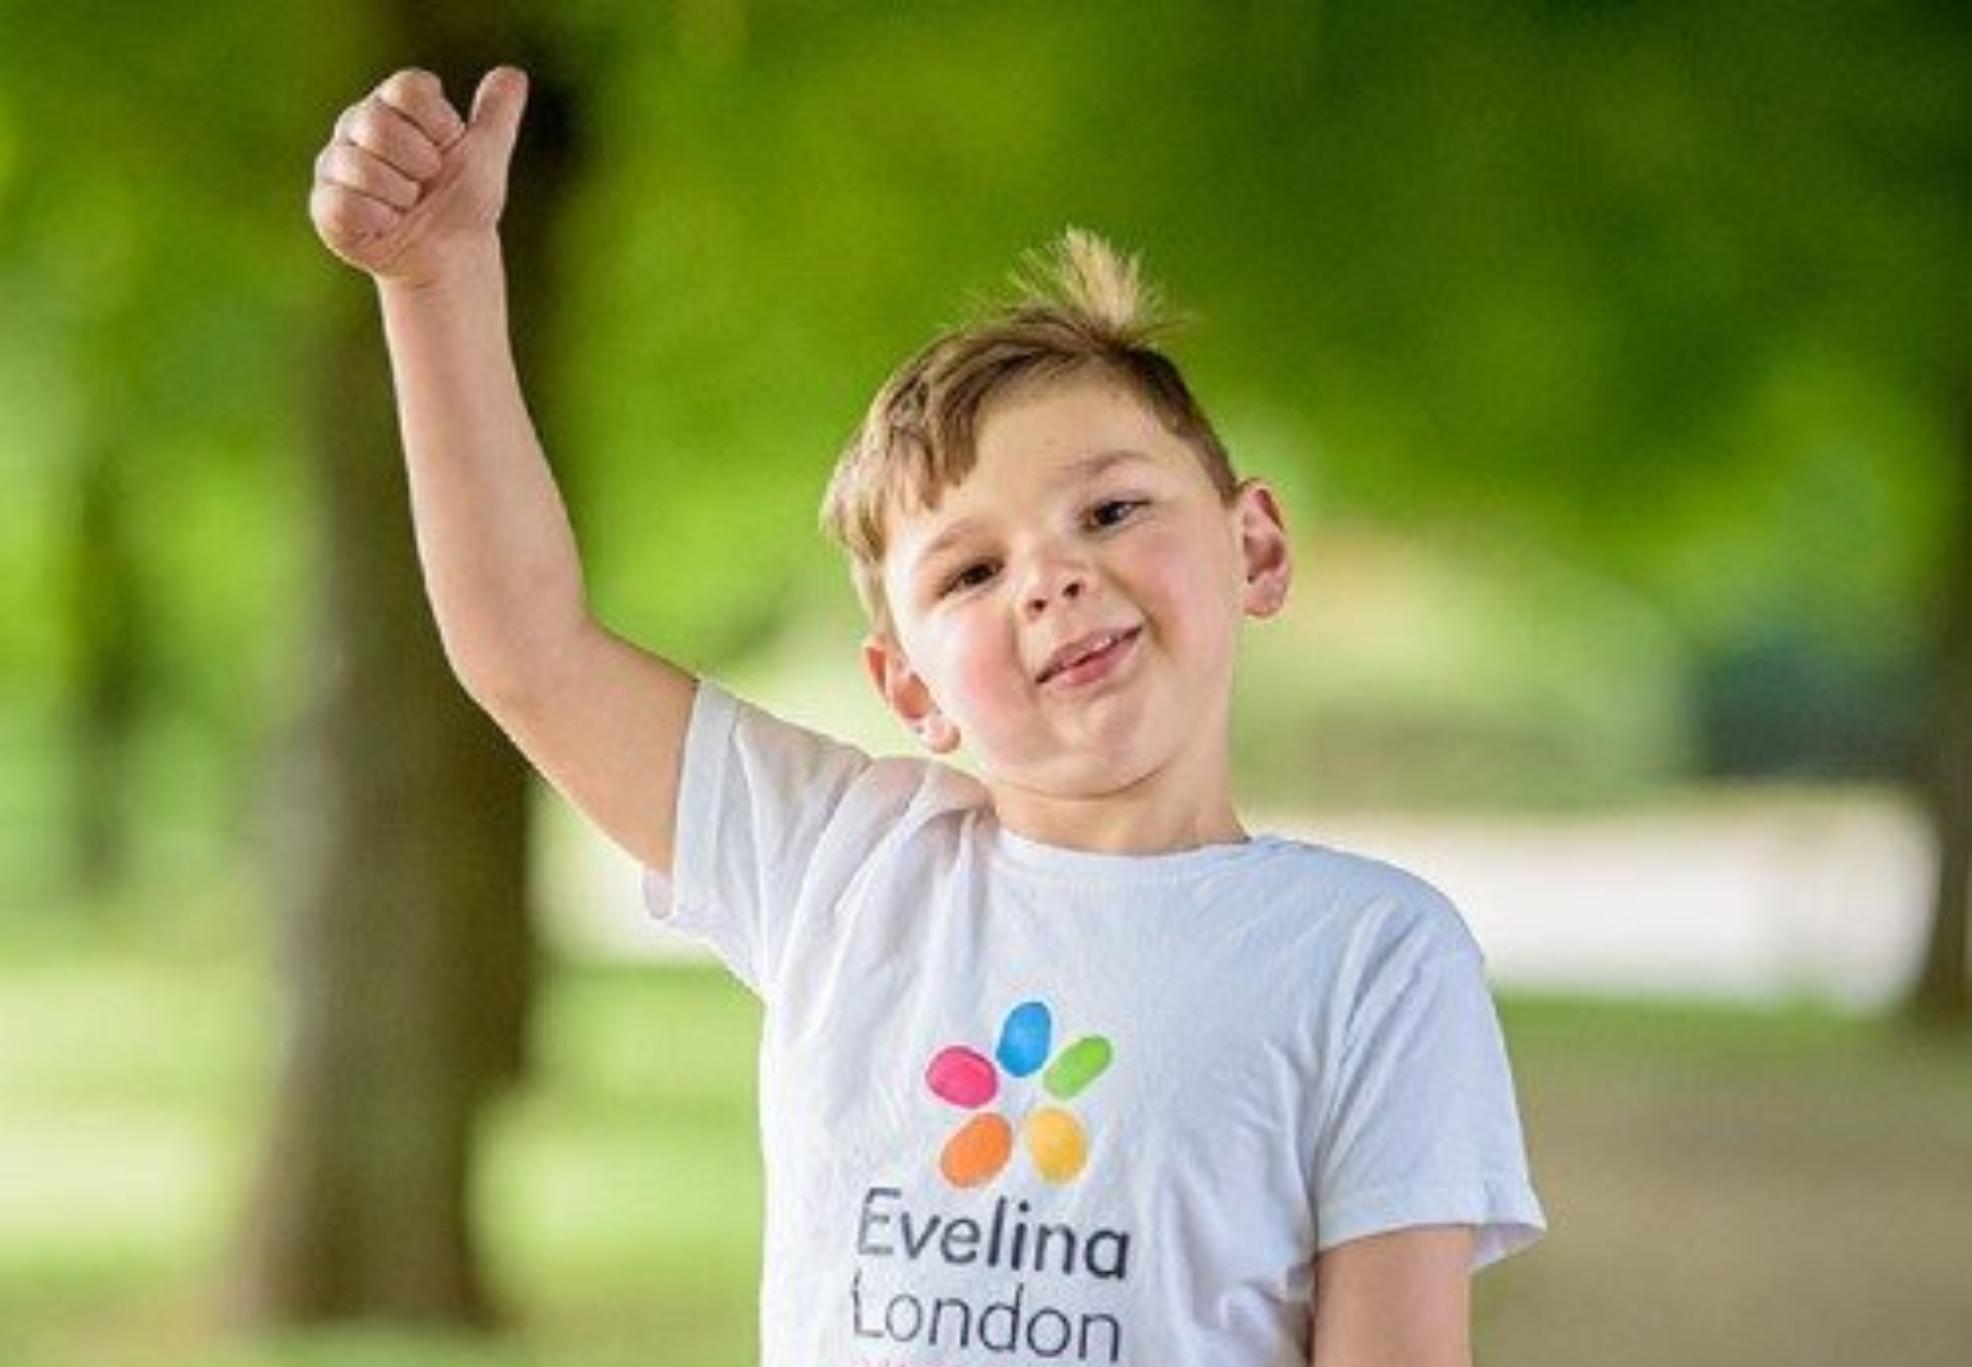 5χρονος με πρόσθετα μέλη περπάτησε 6 μίλια και μάζεψε 1 εκ. ευρώ για το νοσοκομείο που τον έσωσε